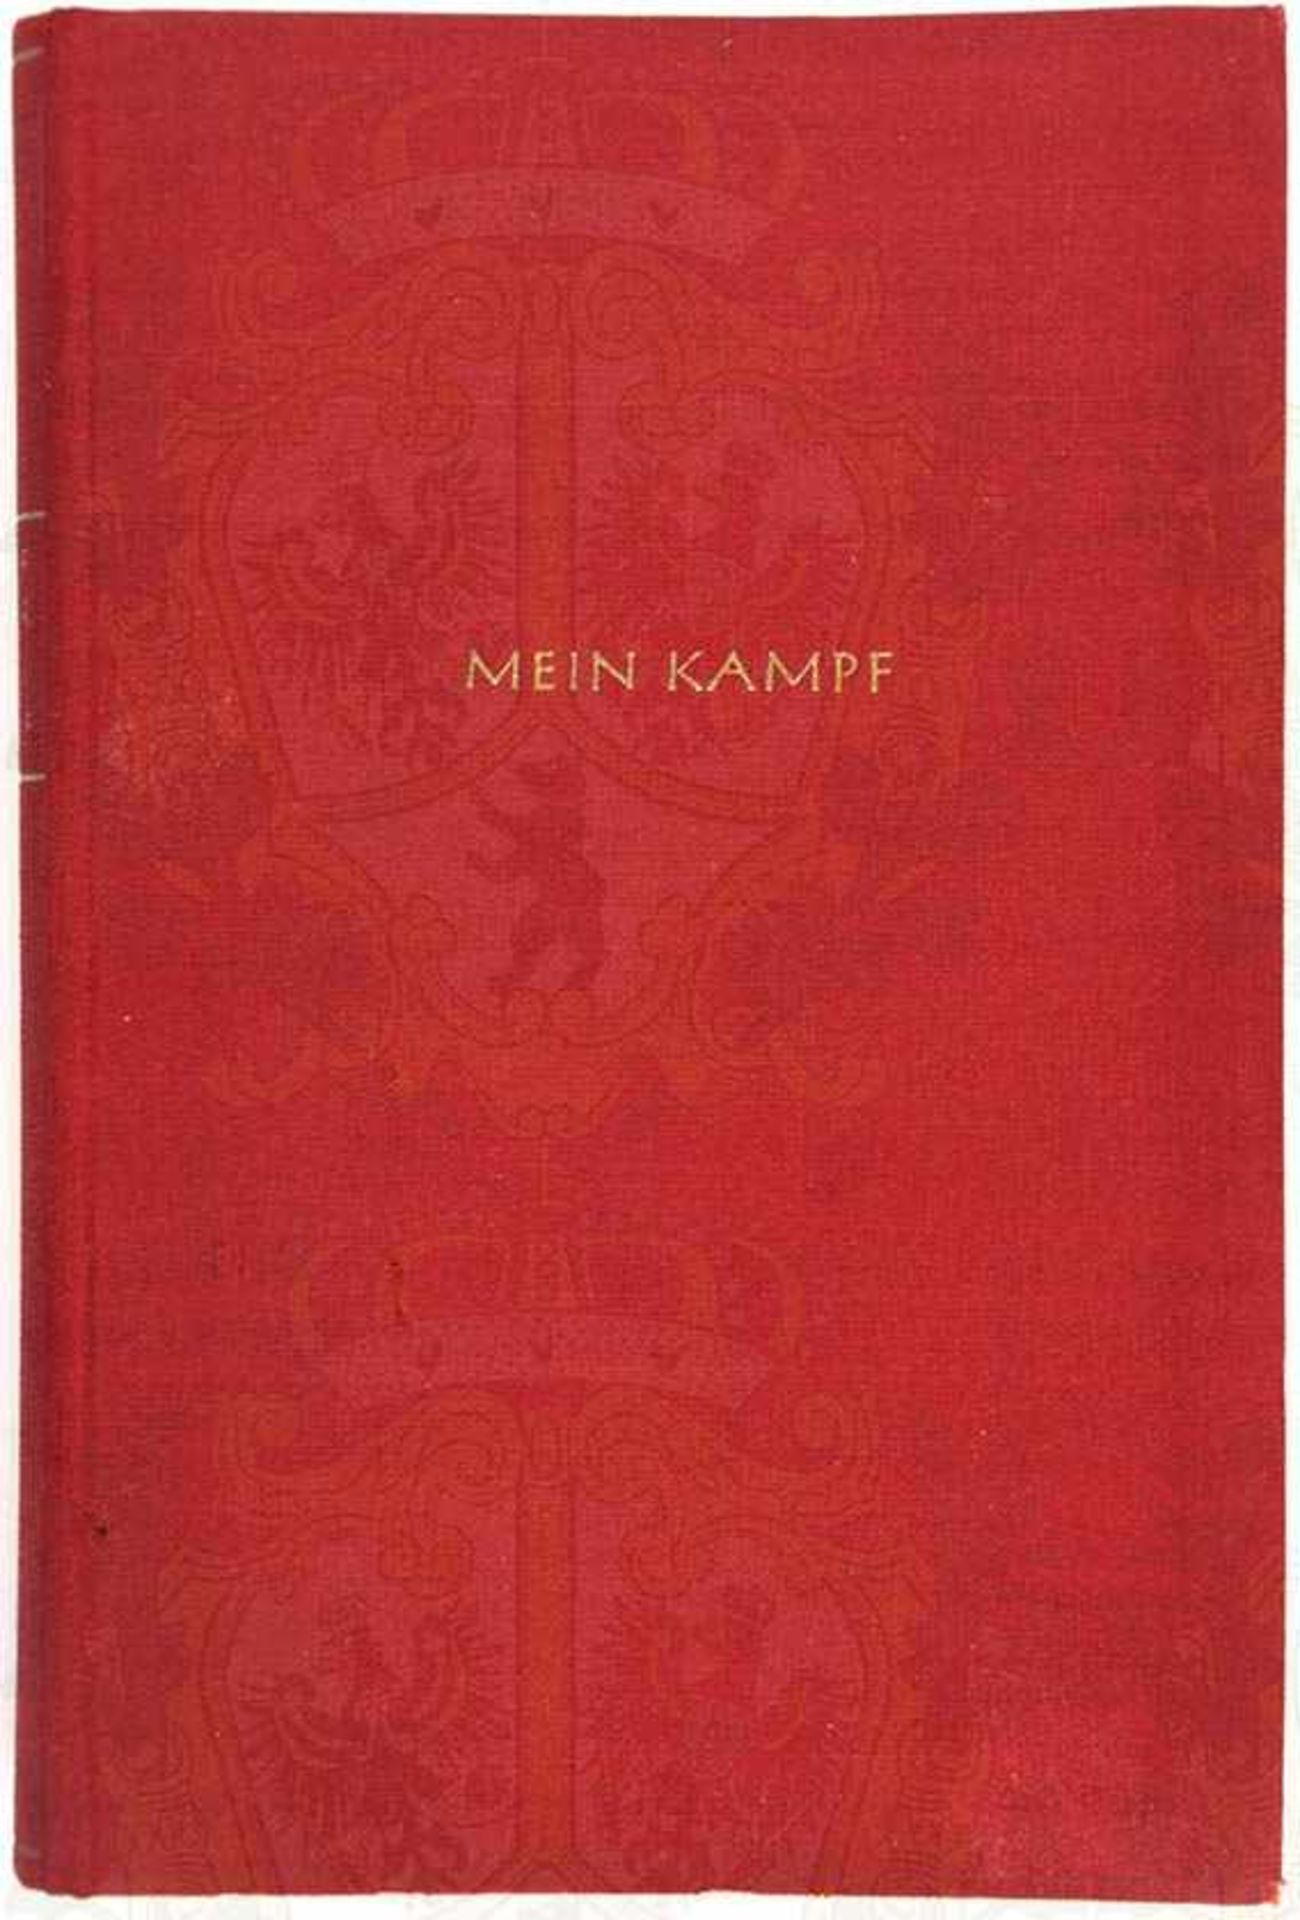 MEIN KAMPF, Adolf Hitler, Dünndruck-Ausgabe, Eher-V. 1940, 1 Portrait, 781 S., gld.gepr., kleinf. - Bild 2 aus 3